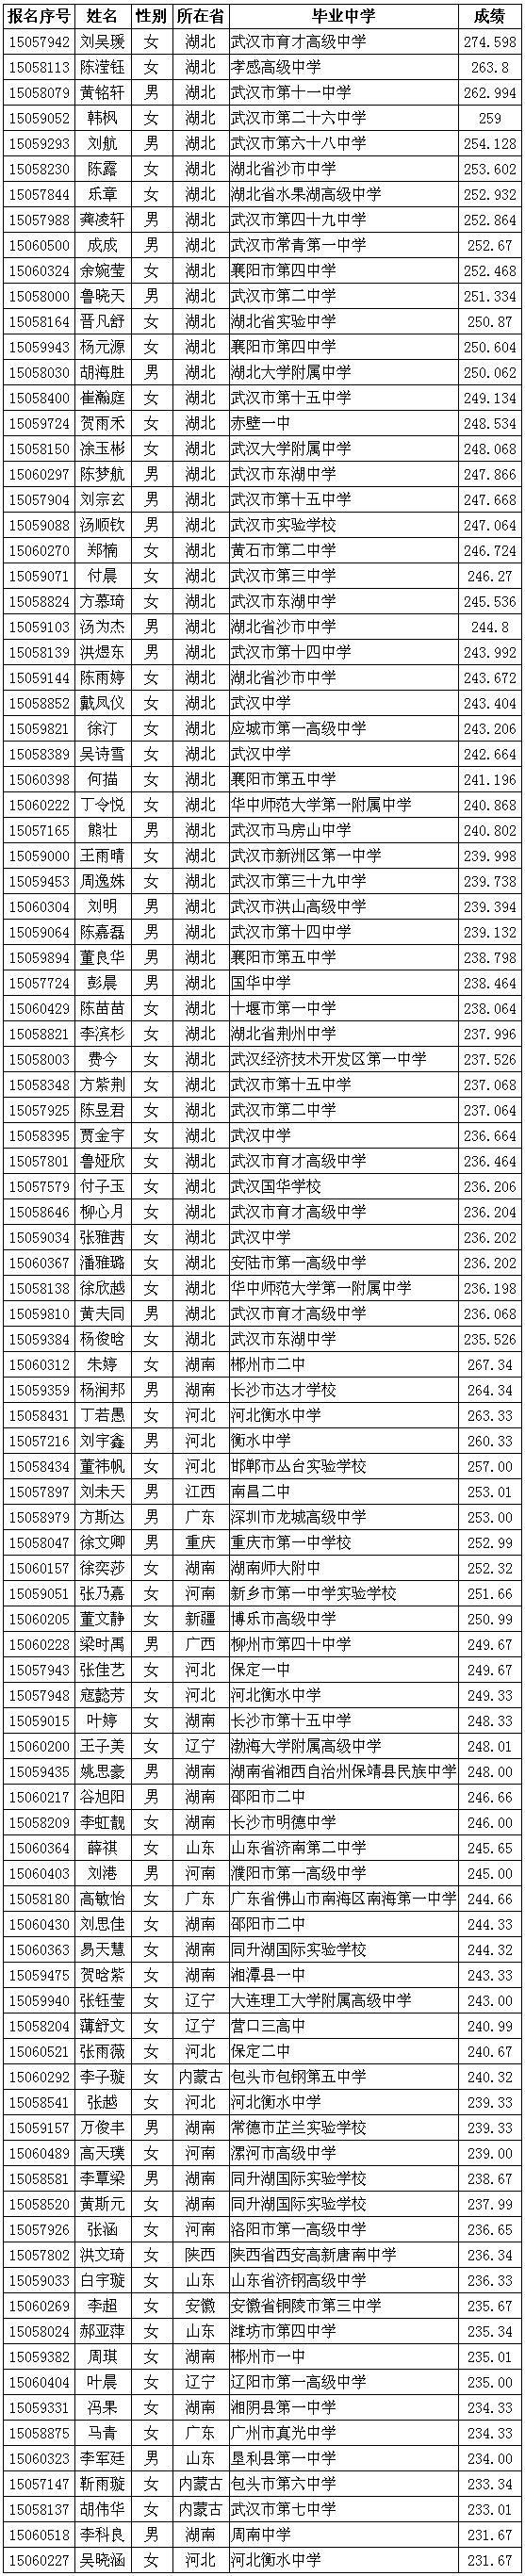 华中科技大学2015年播音与主持艺术专业合格名单